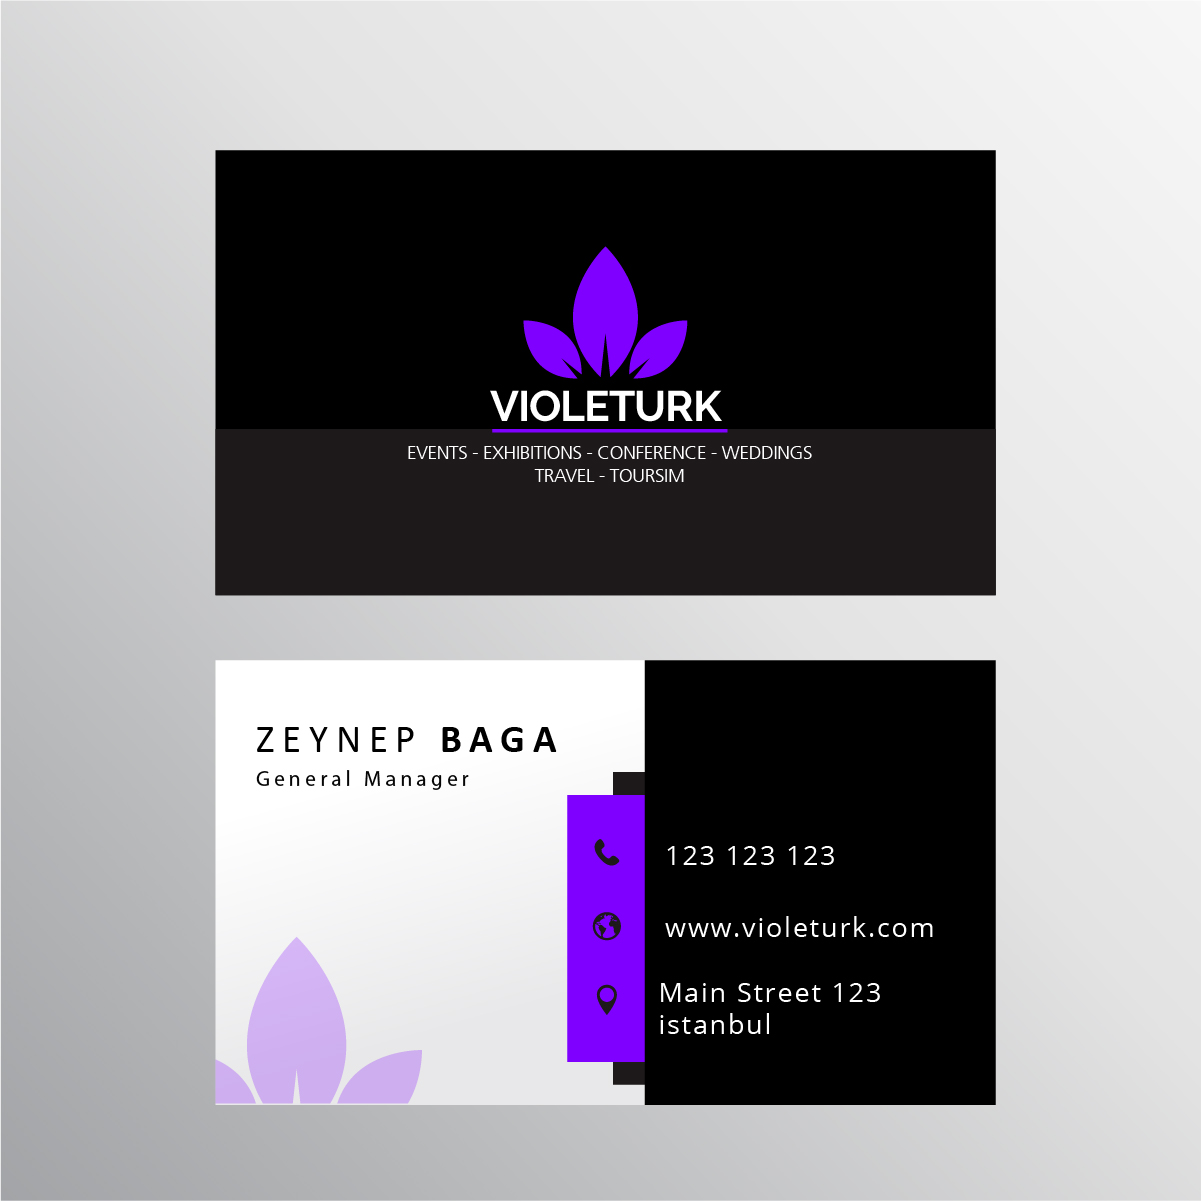 Violeturk.com